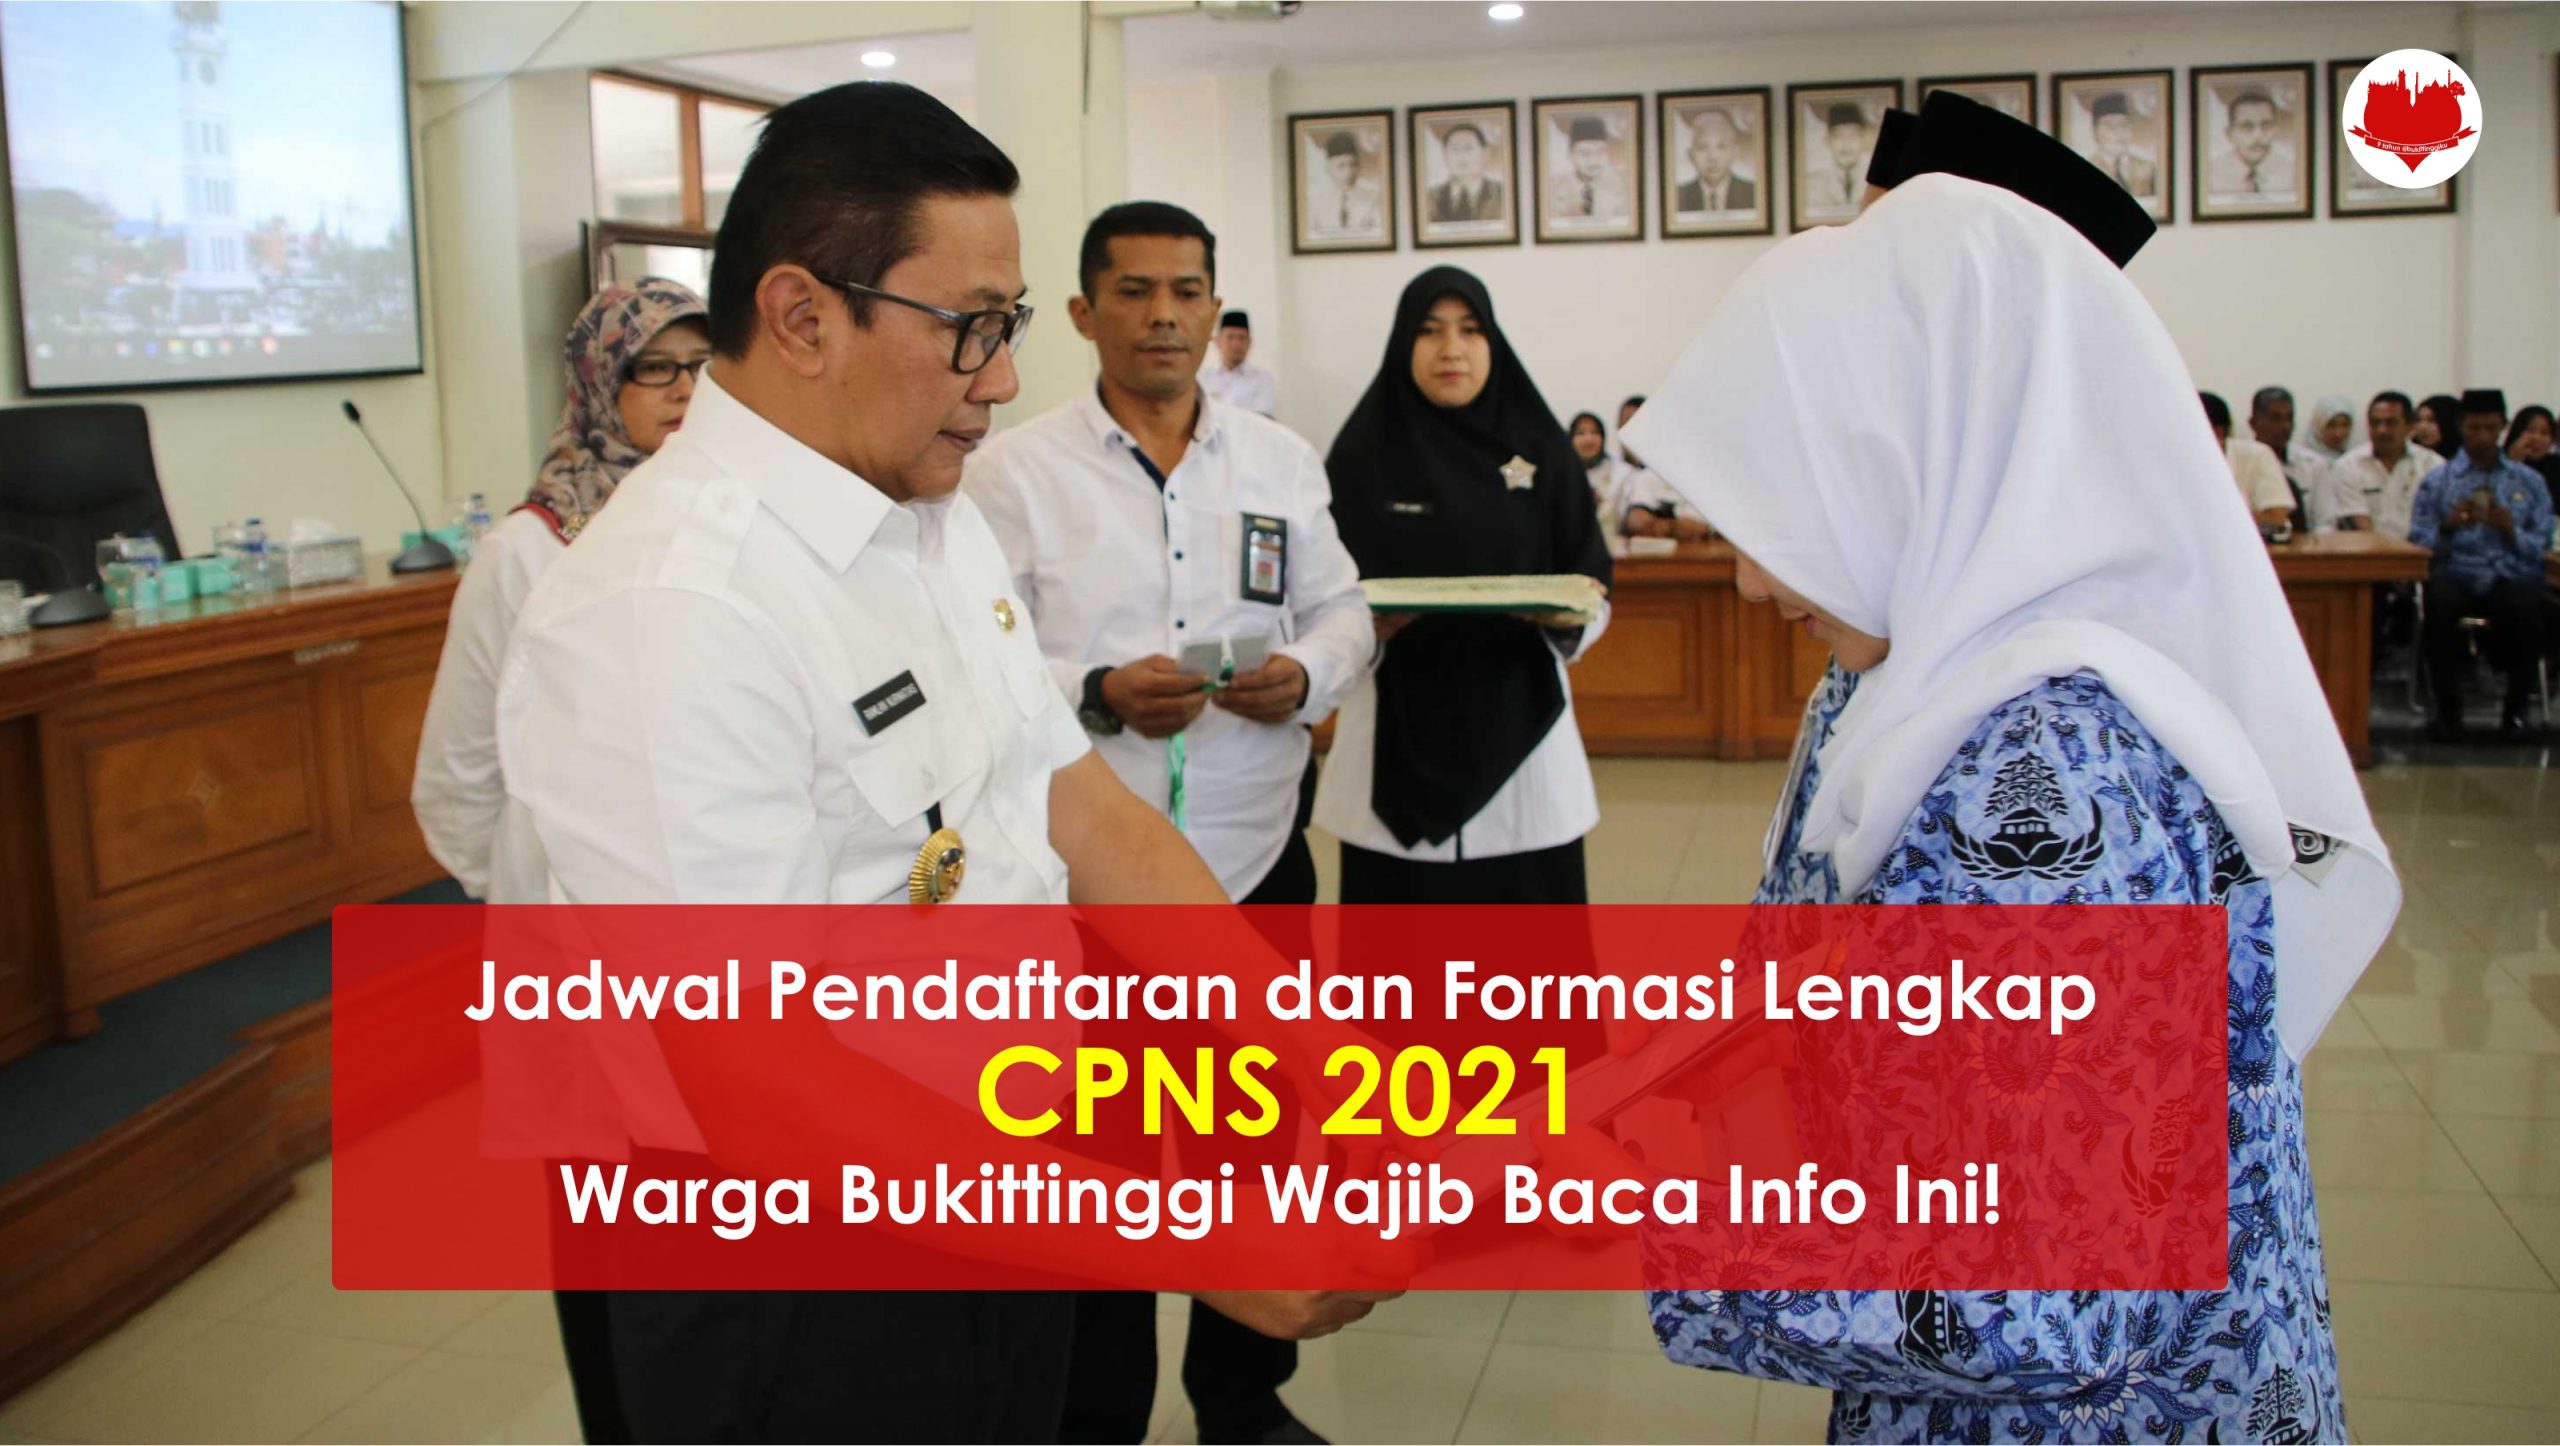 Jadwal Pendaftaran dan Formasi Lengkap CPNS 2021, Warga Bukittinggi Wajib Baca Info Ini